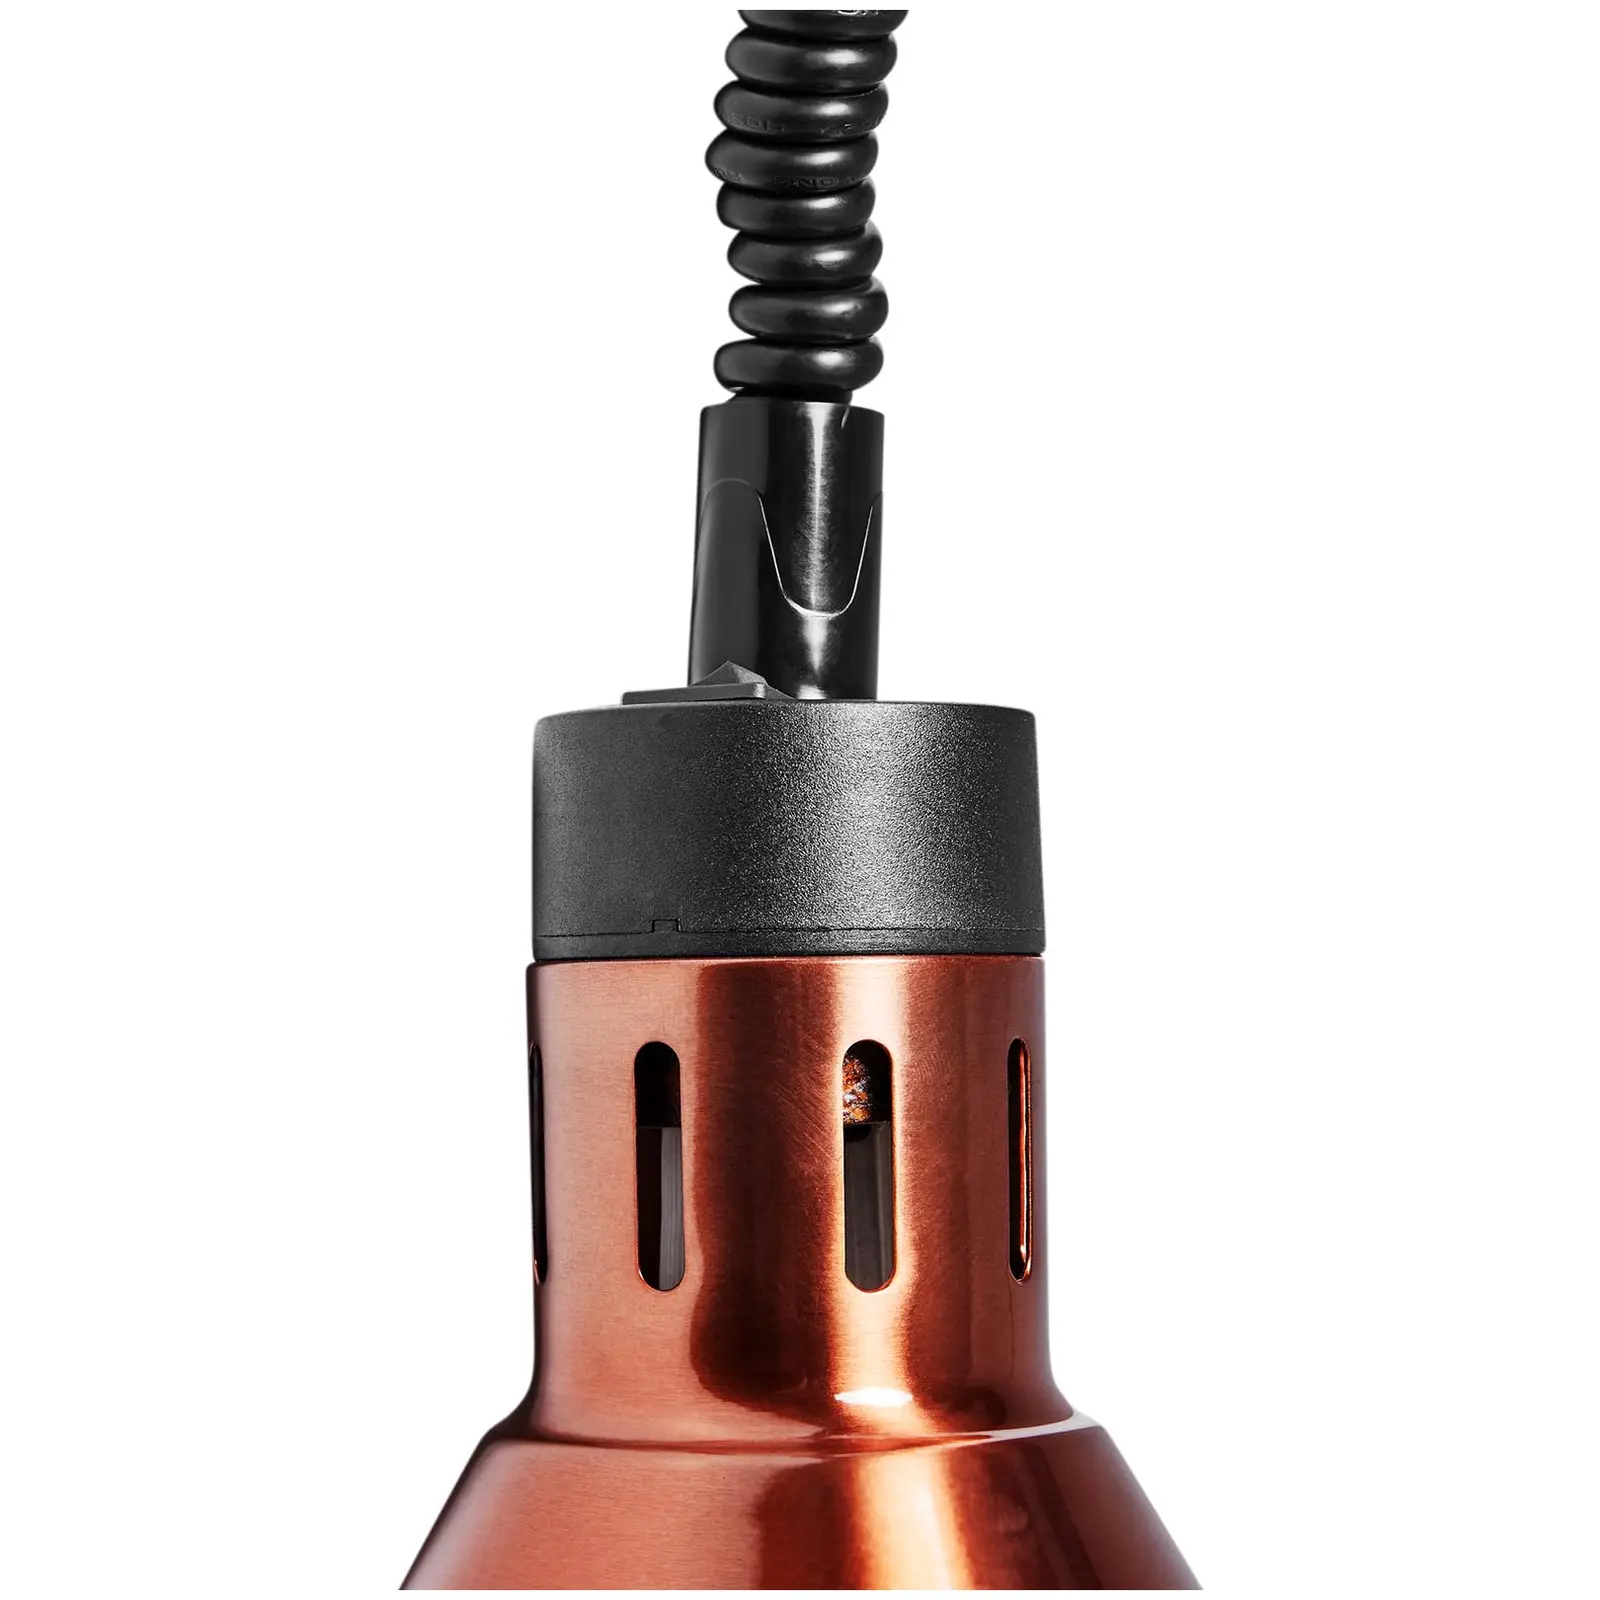 Нагревателна лампа - меден вид - 27 x 27 x 31 см - Royal Catering - стомана - регулируема височина